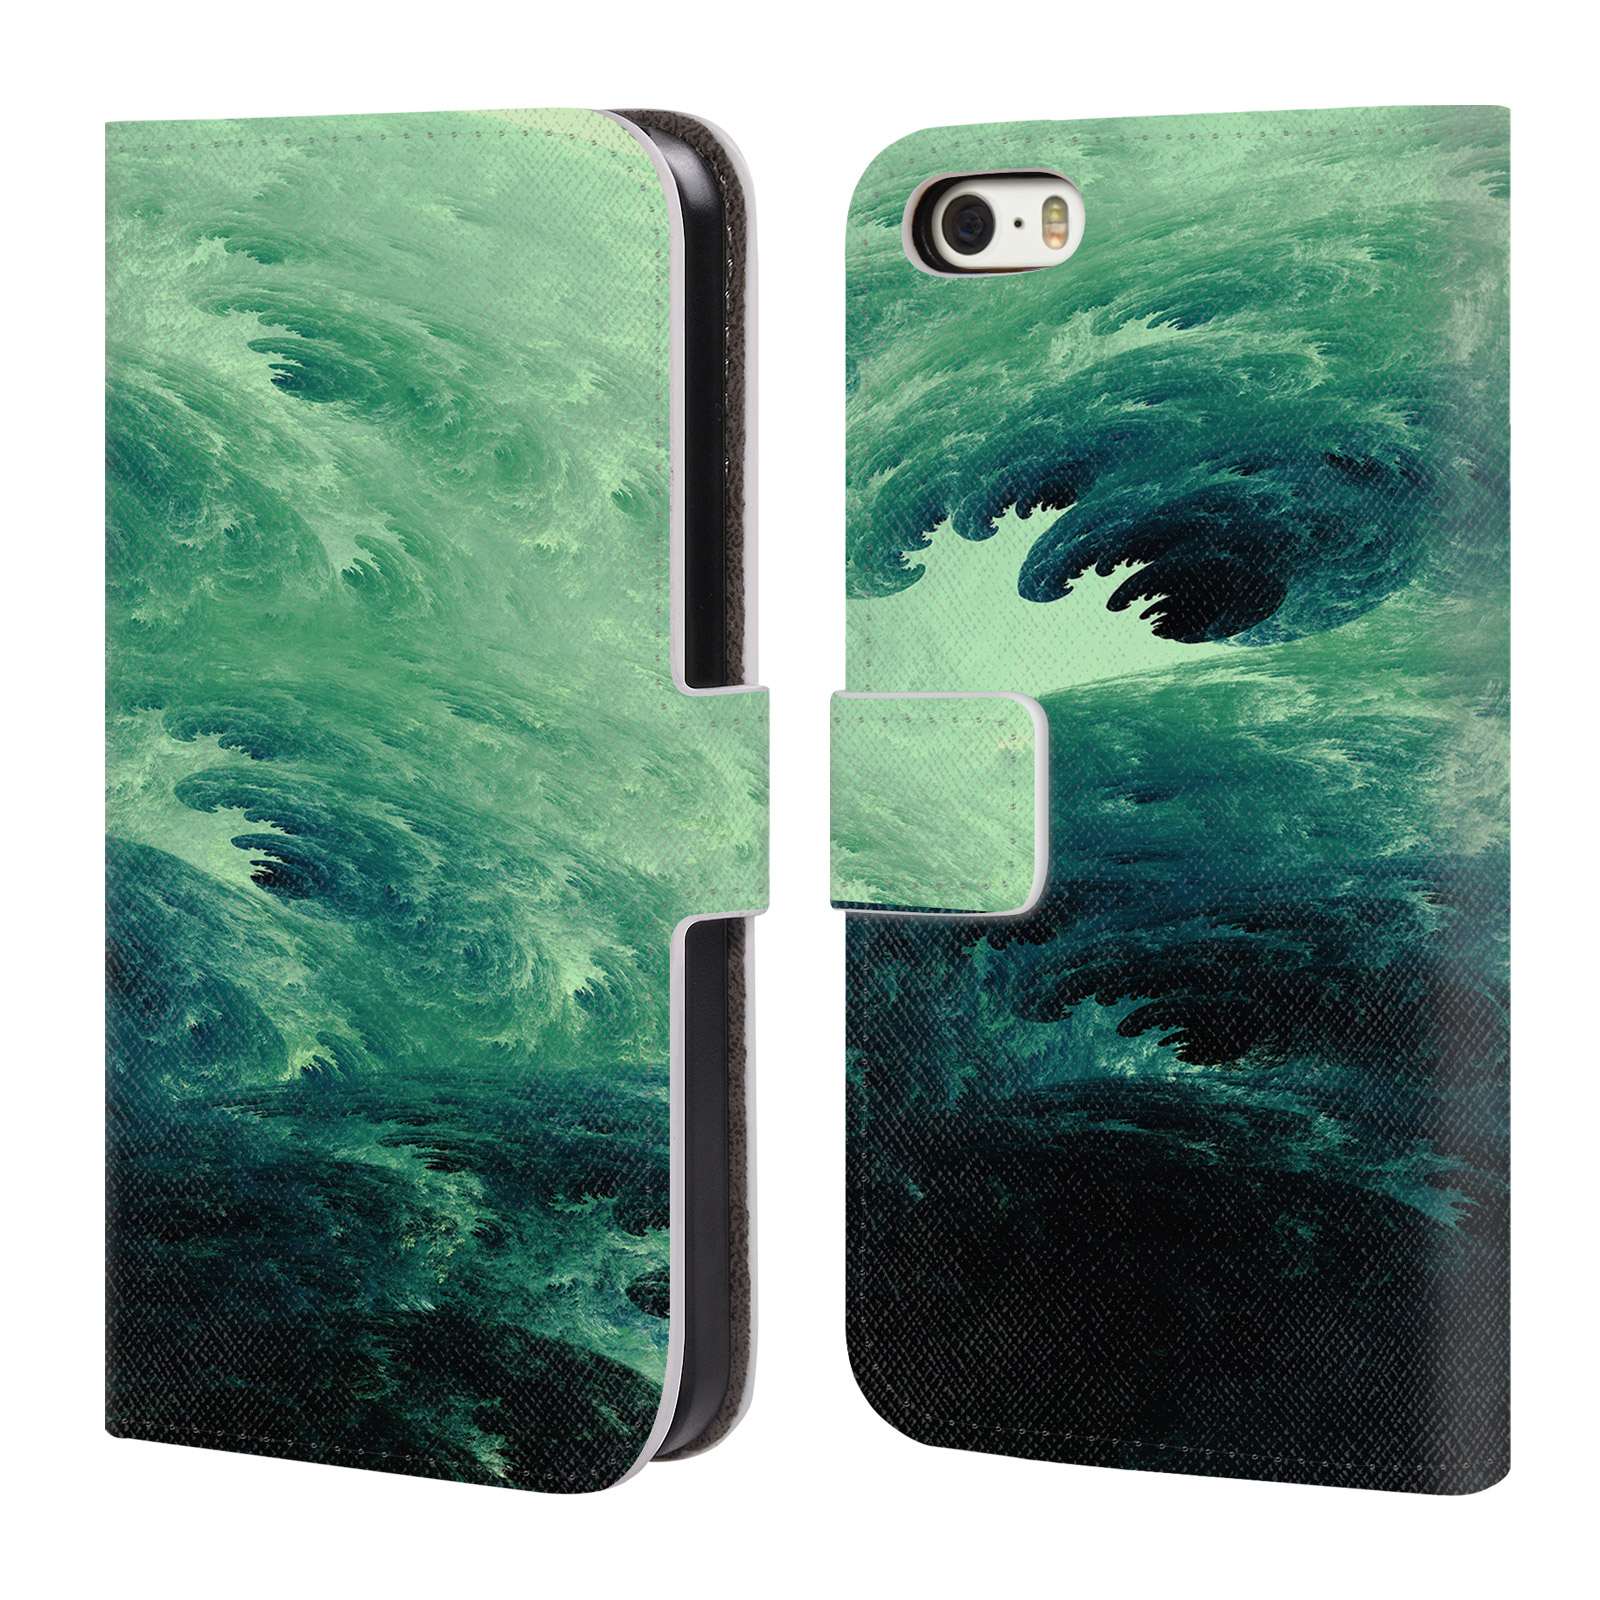 Pouzdro HEAD CASE pro mobil Apple Iphone 5 / 5S / SE 2015 - Andi Greyscale umělec divoký oceán